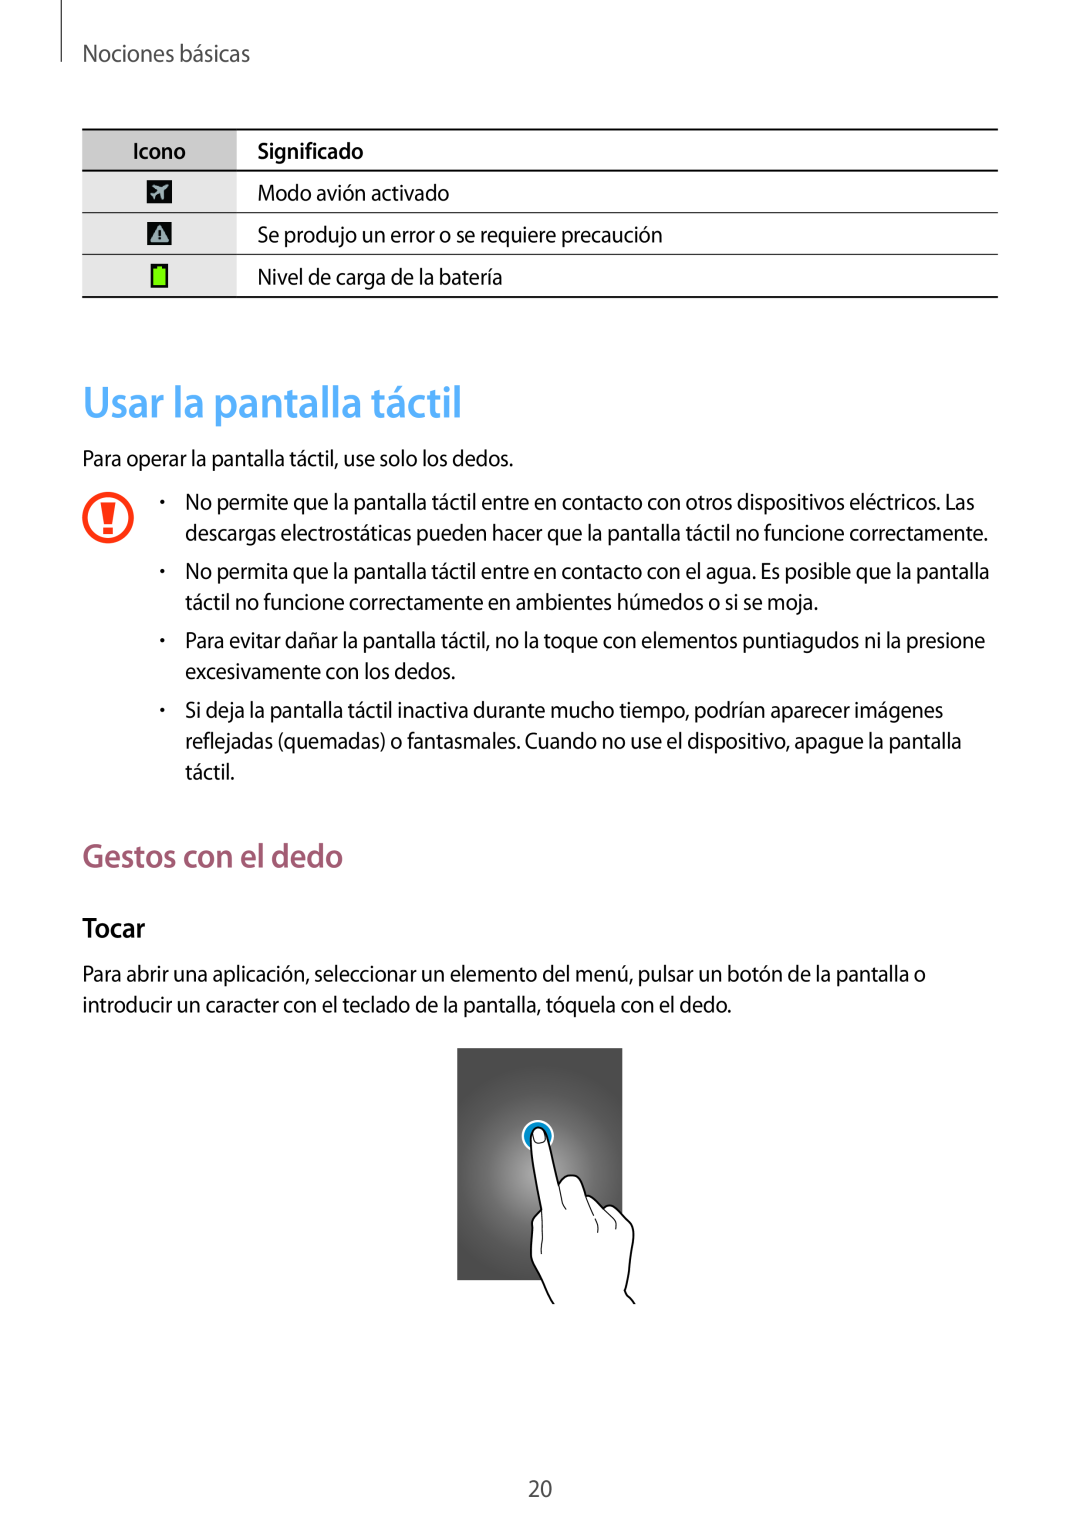 Samsung GT-I9105UANTPH manual Usar la pantalla táctil, Gestos con el dedo, Tocar, Nociones básicas, Icono Significado 